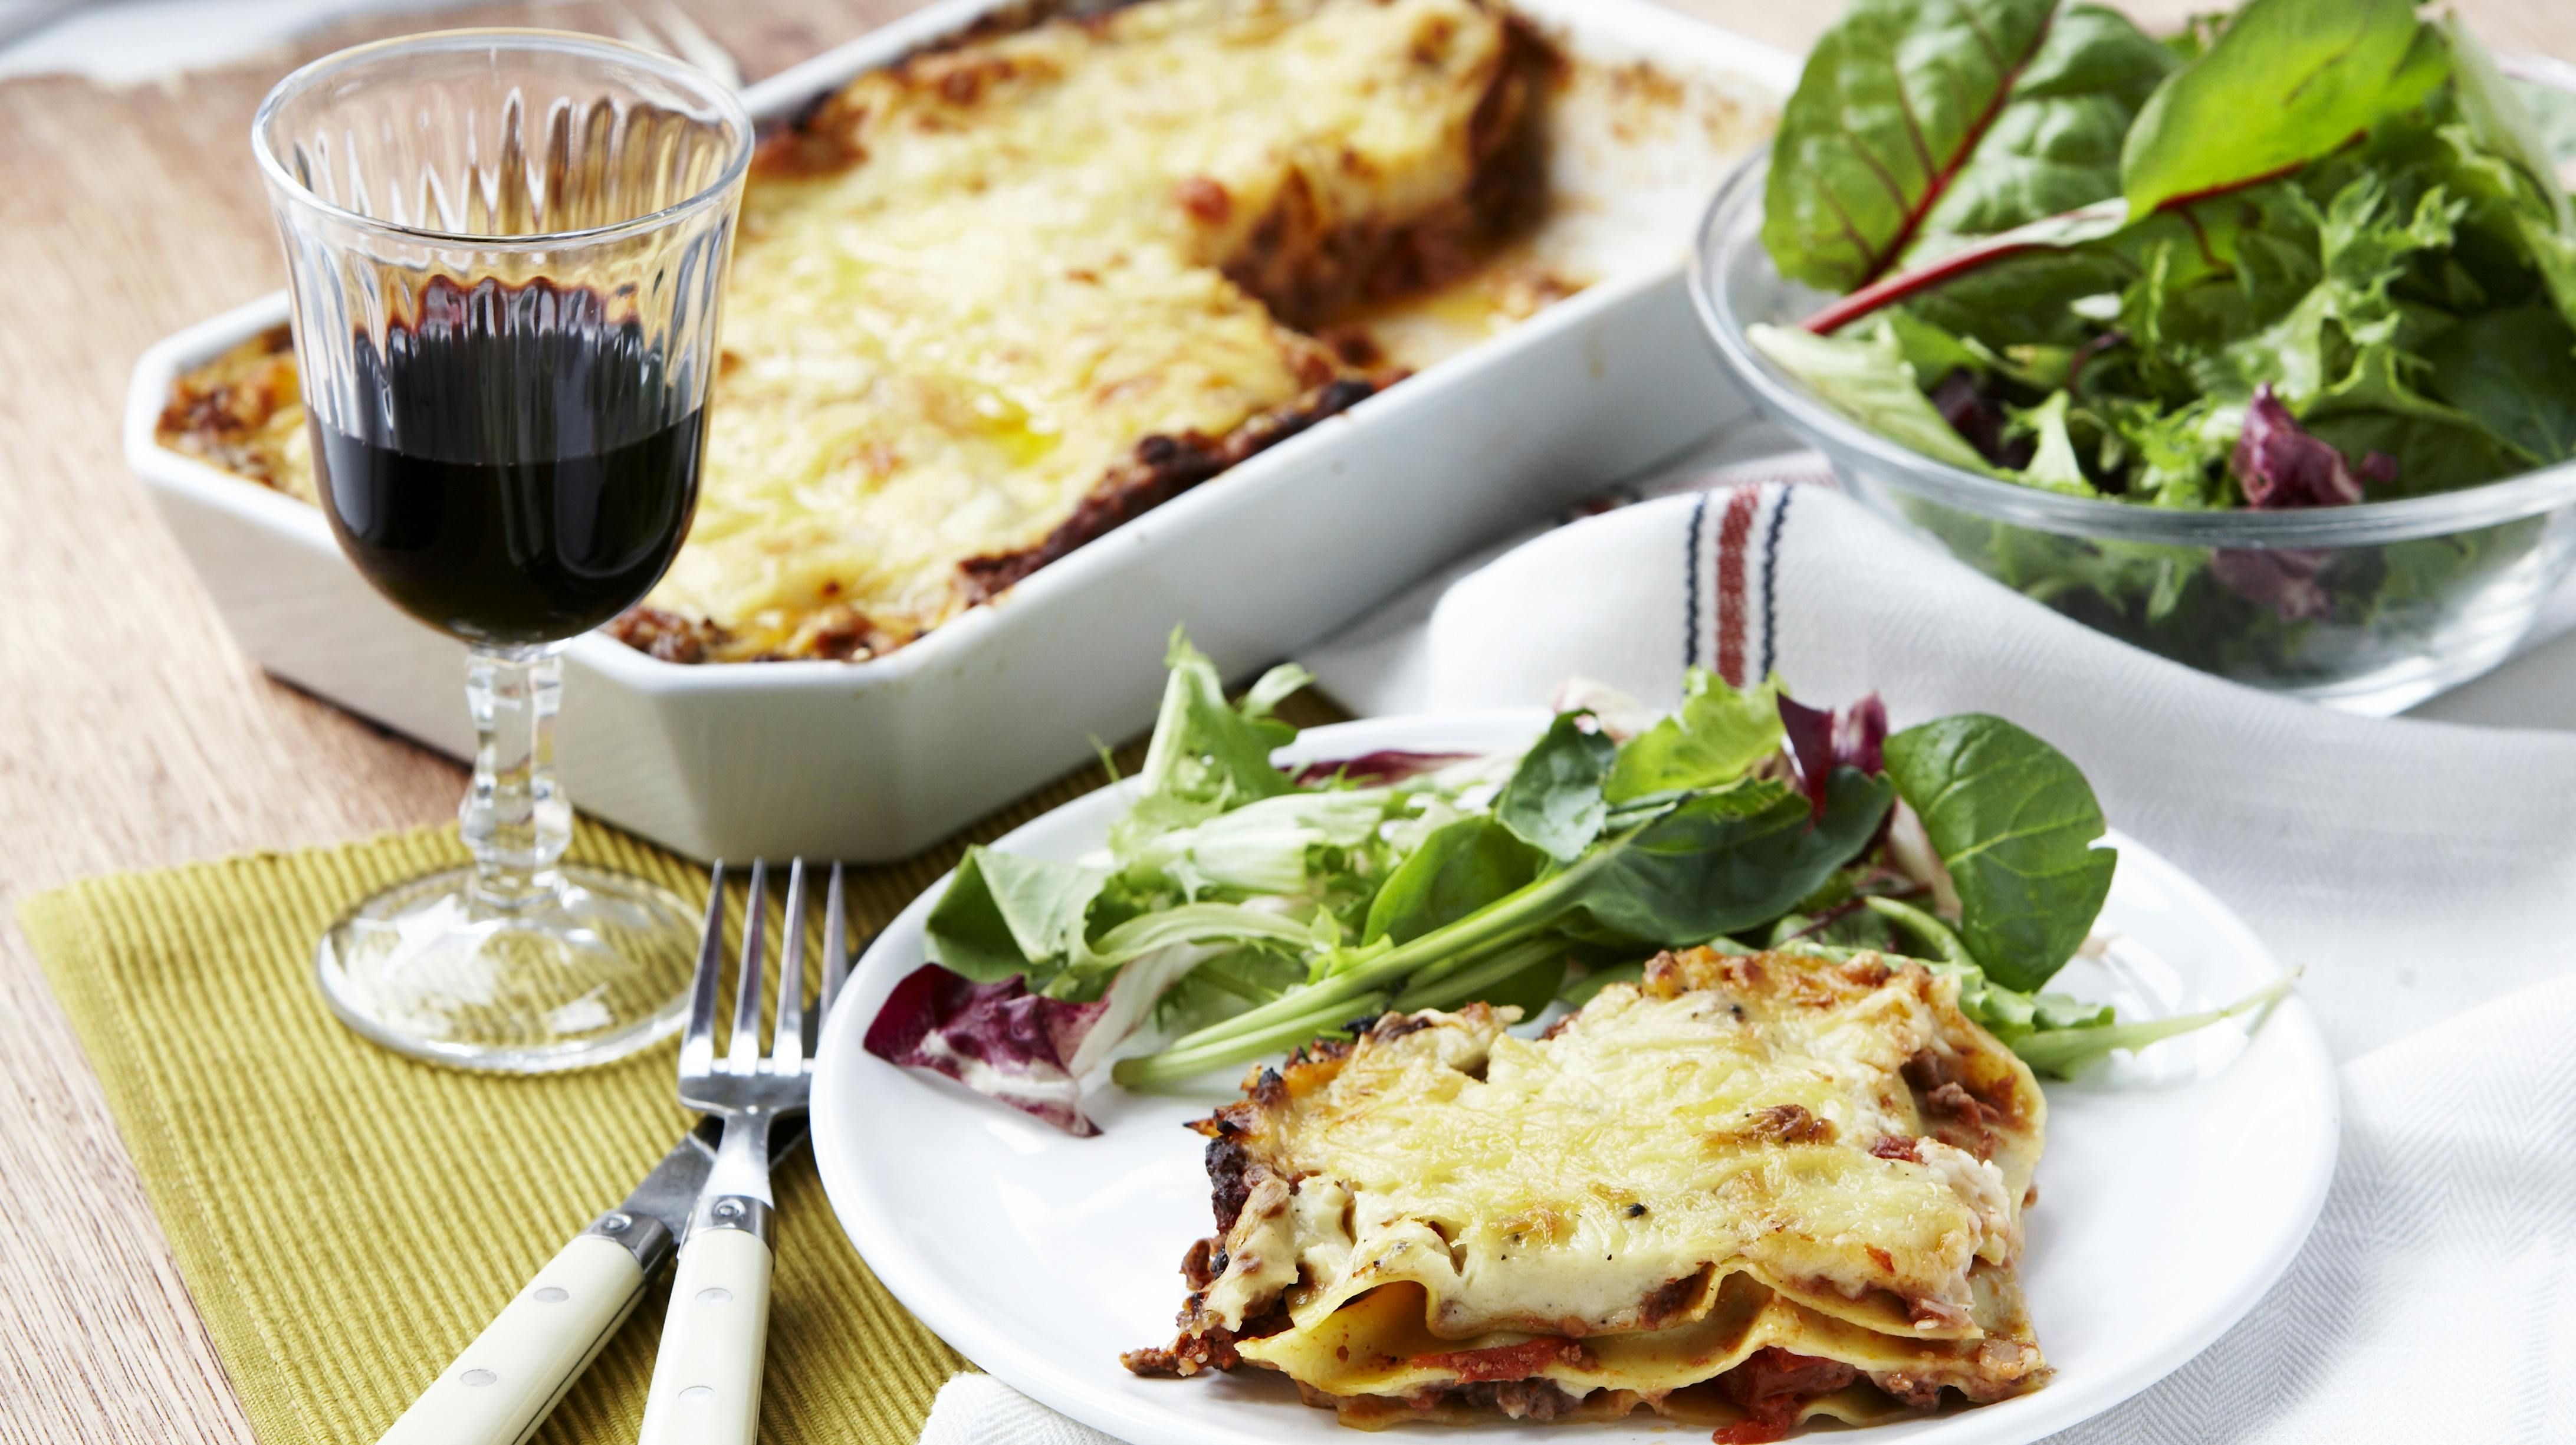 For tiden står lasagne måske ikke øverst på madplanen, fordi den skal tilbringe uanede mængder tid i ovnen. Men faktisk kan du lave en ligeså lækker lasagne, der ikke behøves at være i ovnen særlig længe.